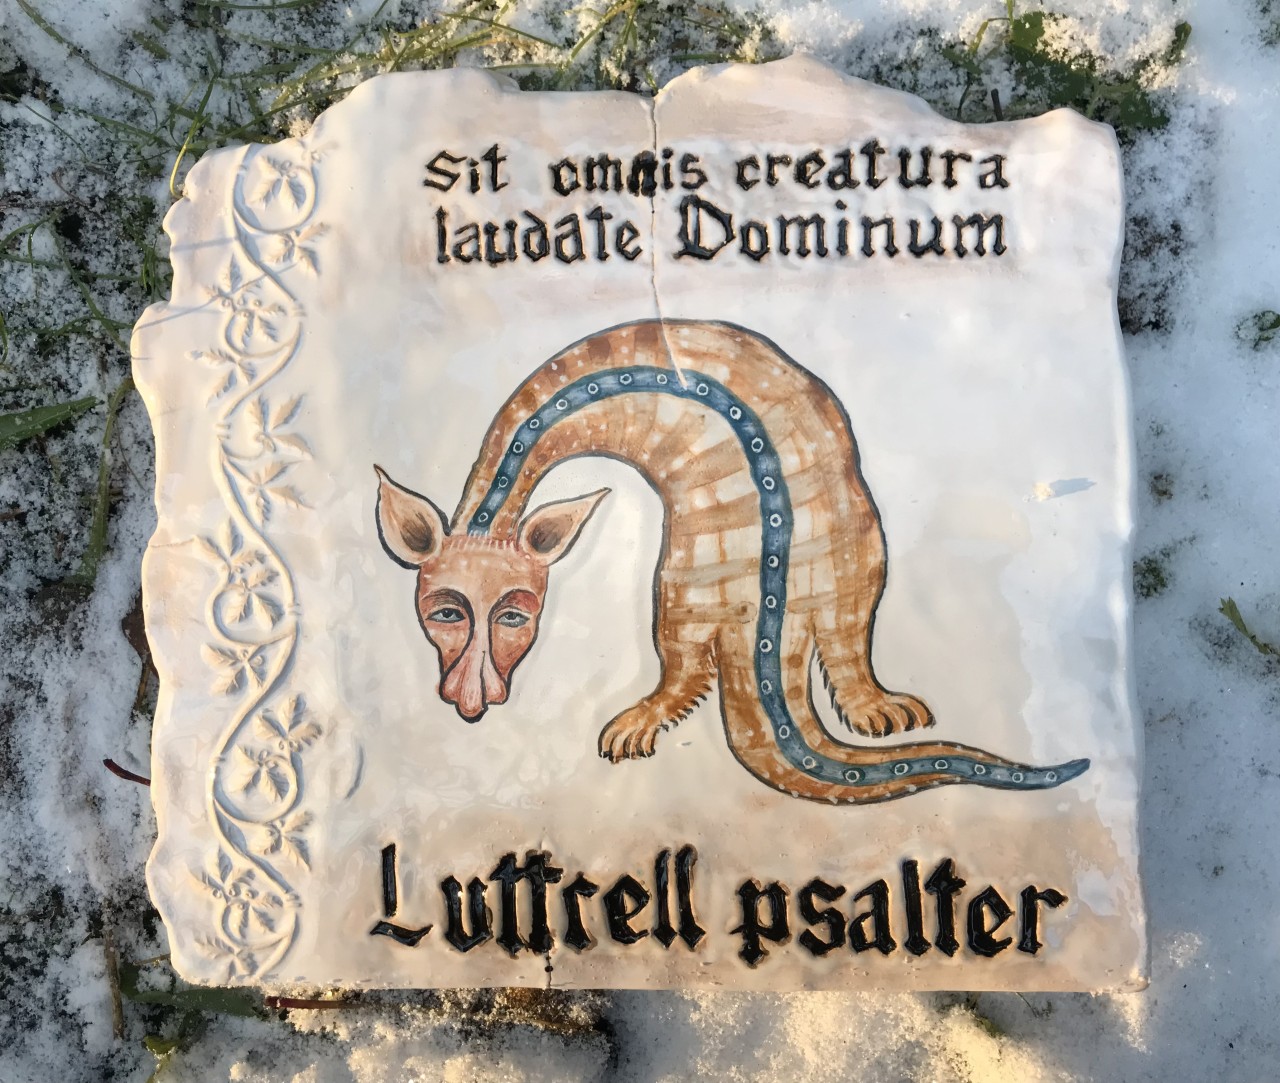 Luttrell psalter Cattus